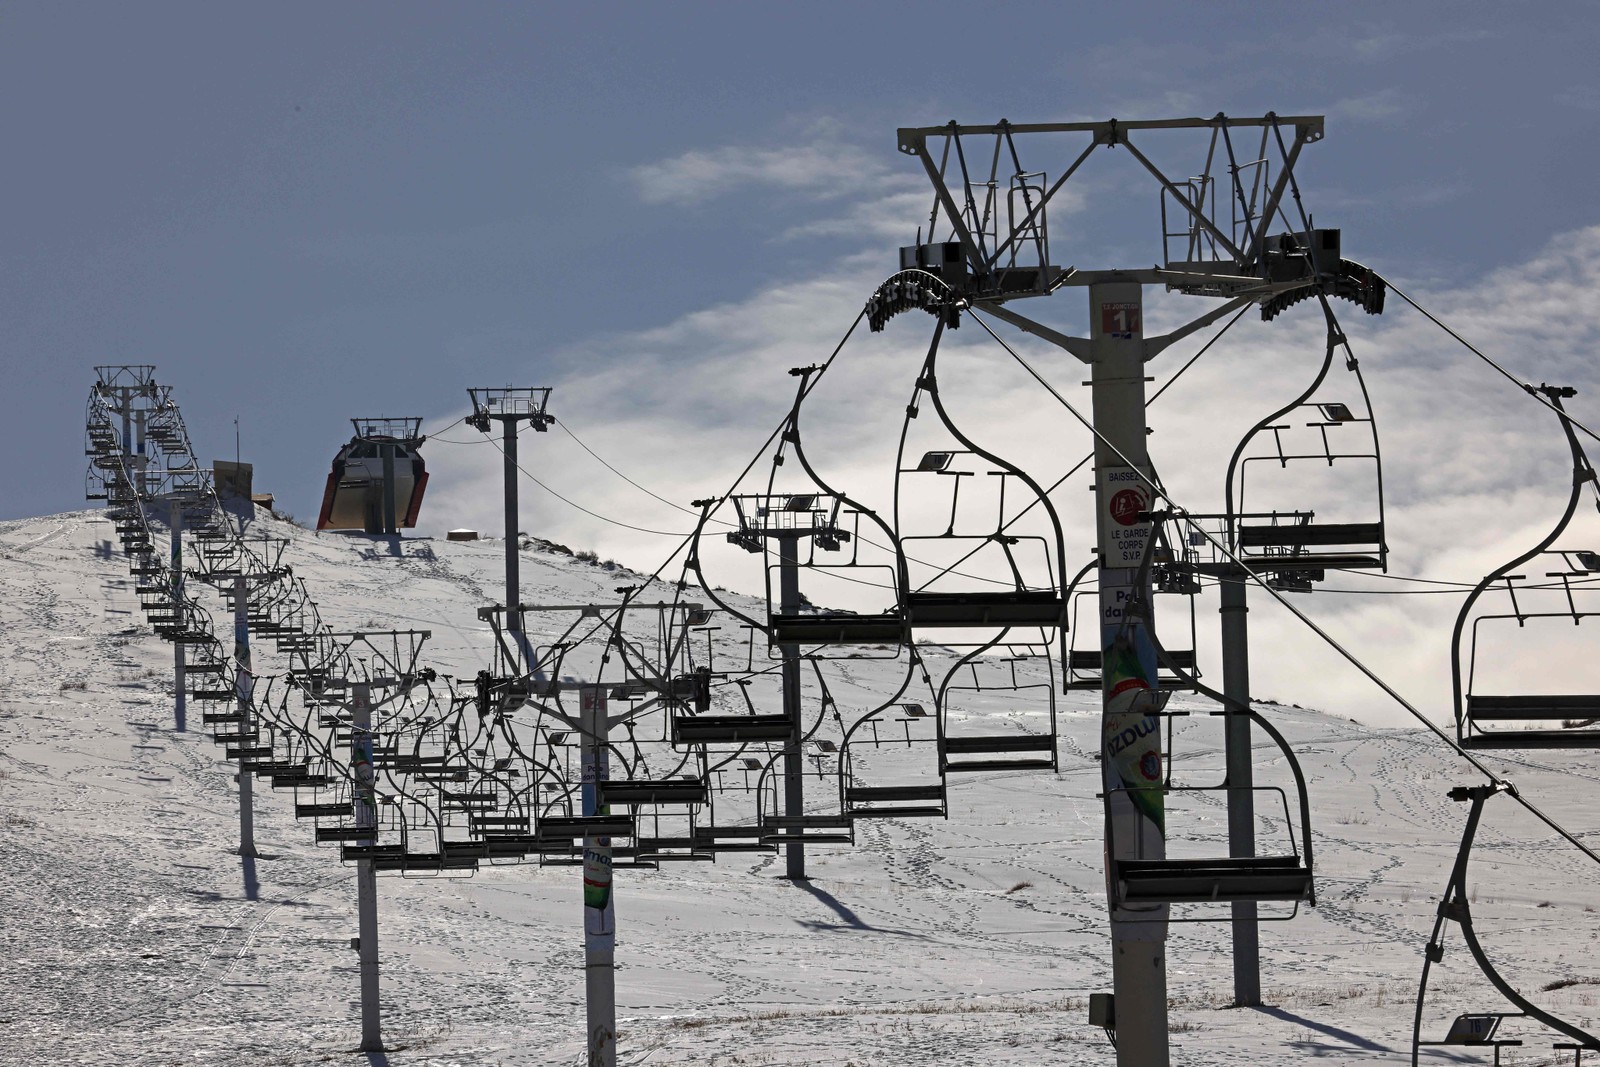 Teleférico é visto vazio na estação de esqui Mzaar, fechada devido à falta de neve, a nordeste de Beirute — Foto: JOSEPH EID / AFP